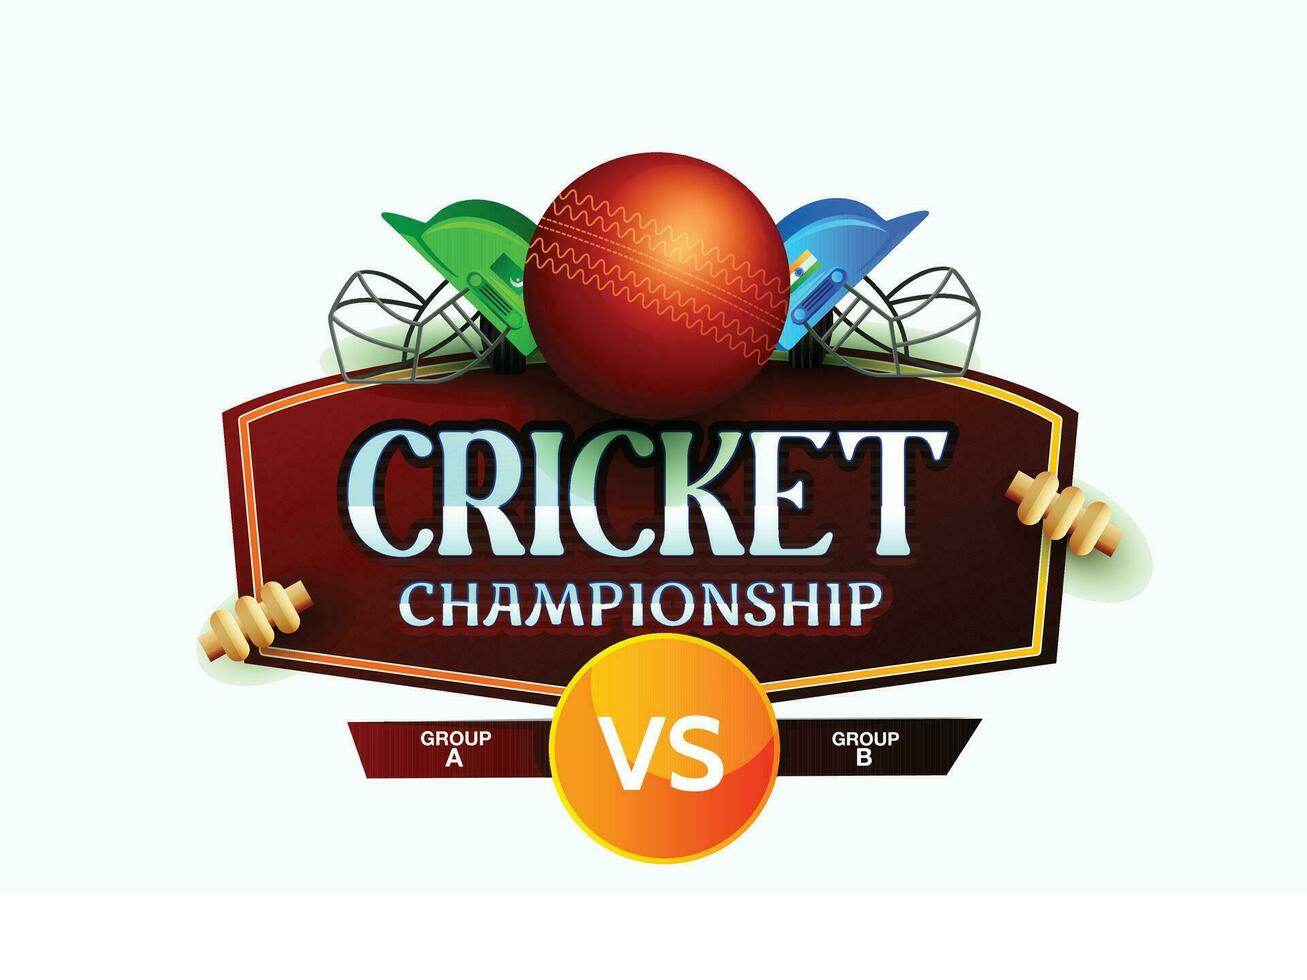 cricket mästerskap liga begrepp med 2 lag match affisch eller baner, cricket fladdermus, boll, stubbe, hjälm med vinnande kopp trofé. vektor